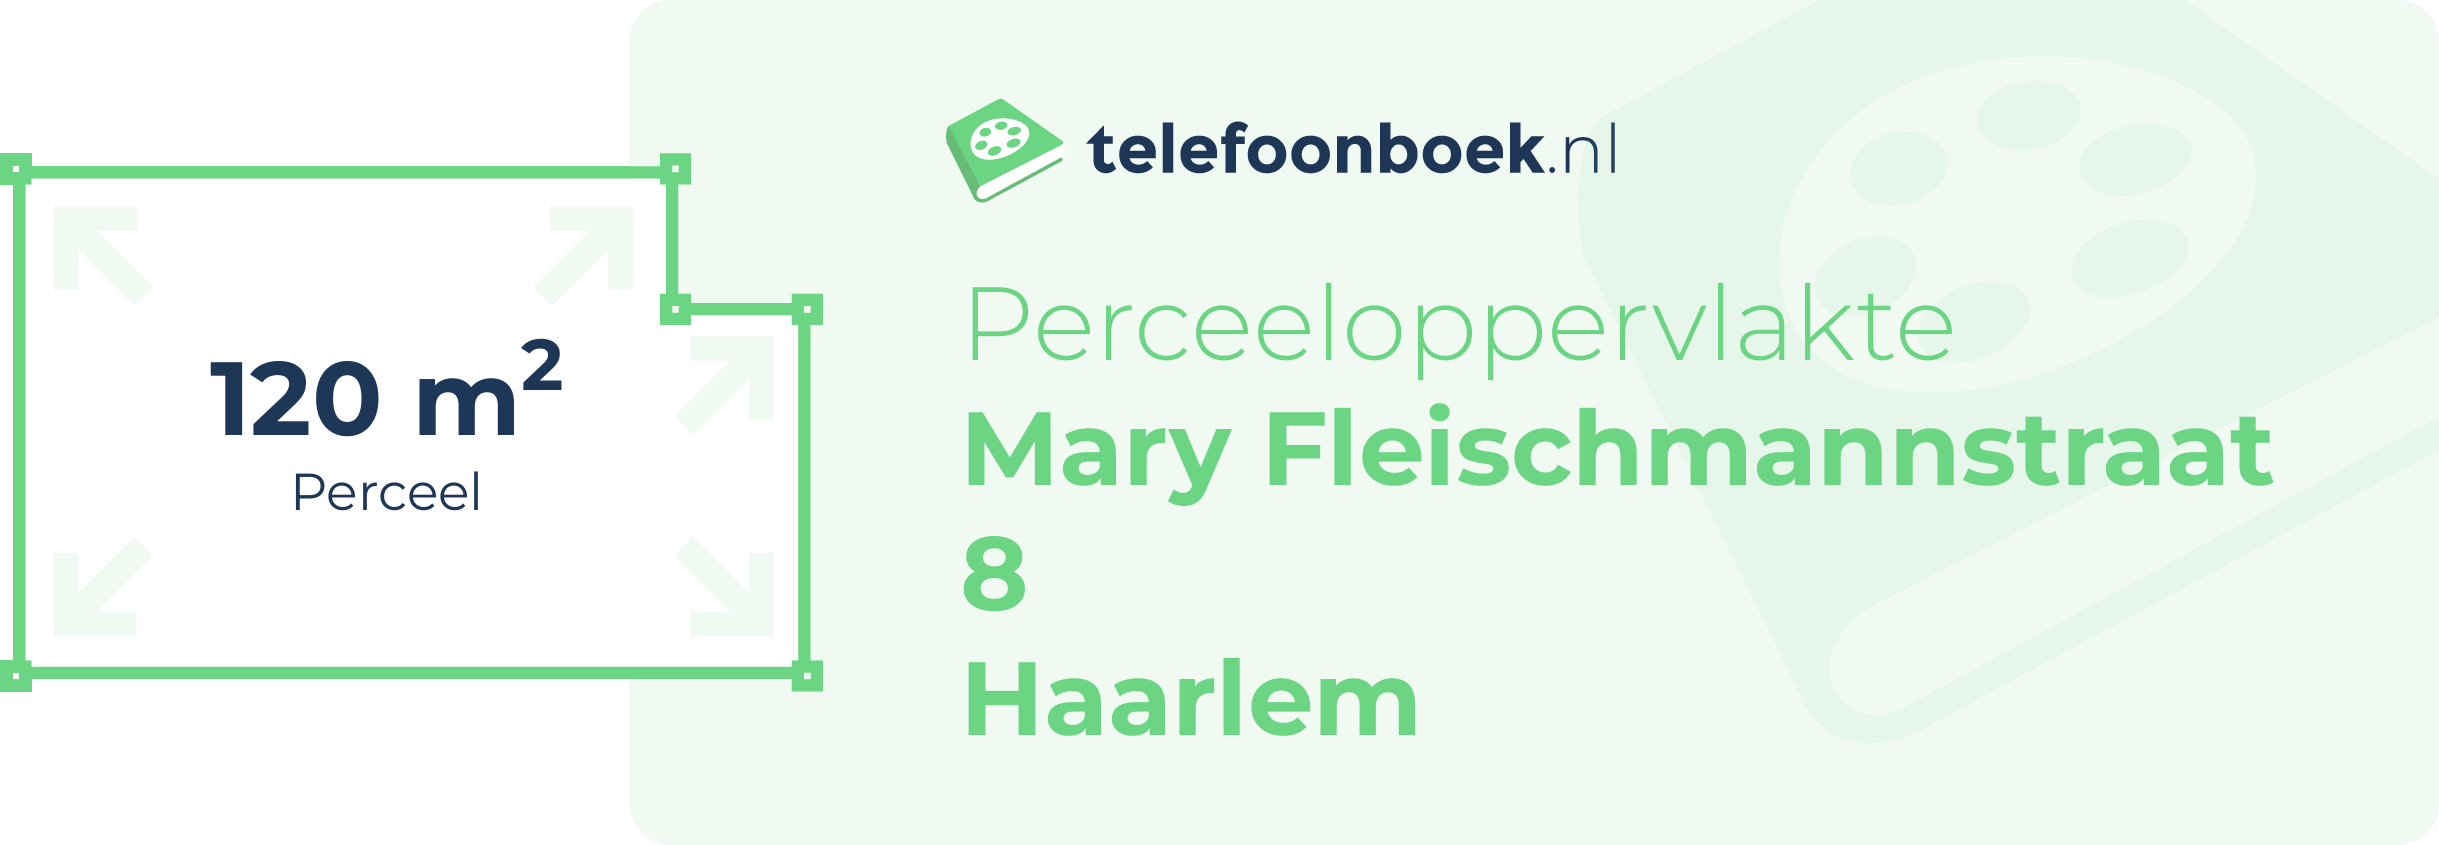 Perceeloppervlakte Mary Fleischmannstraat 8 Haarlem